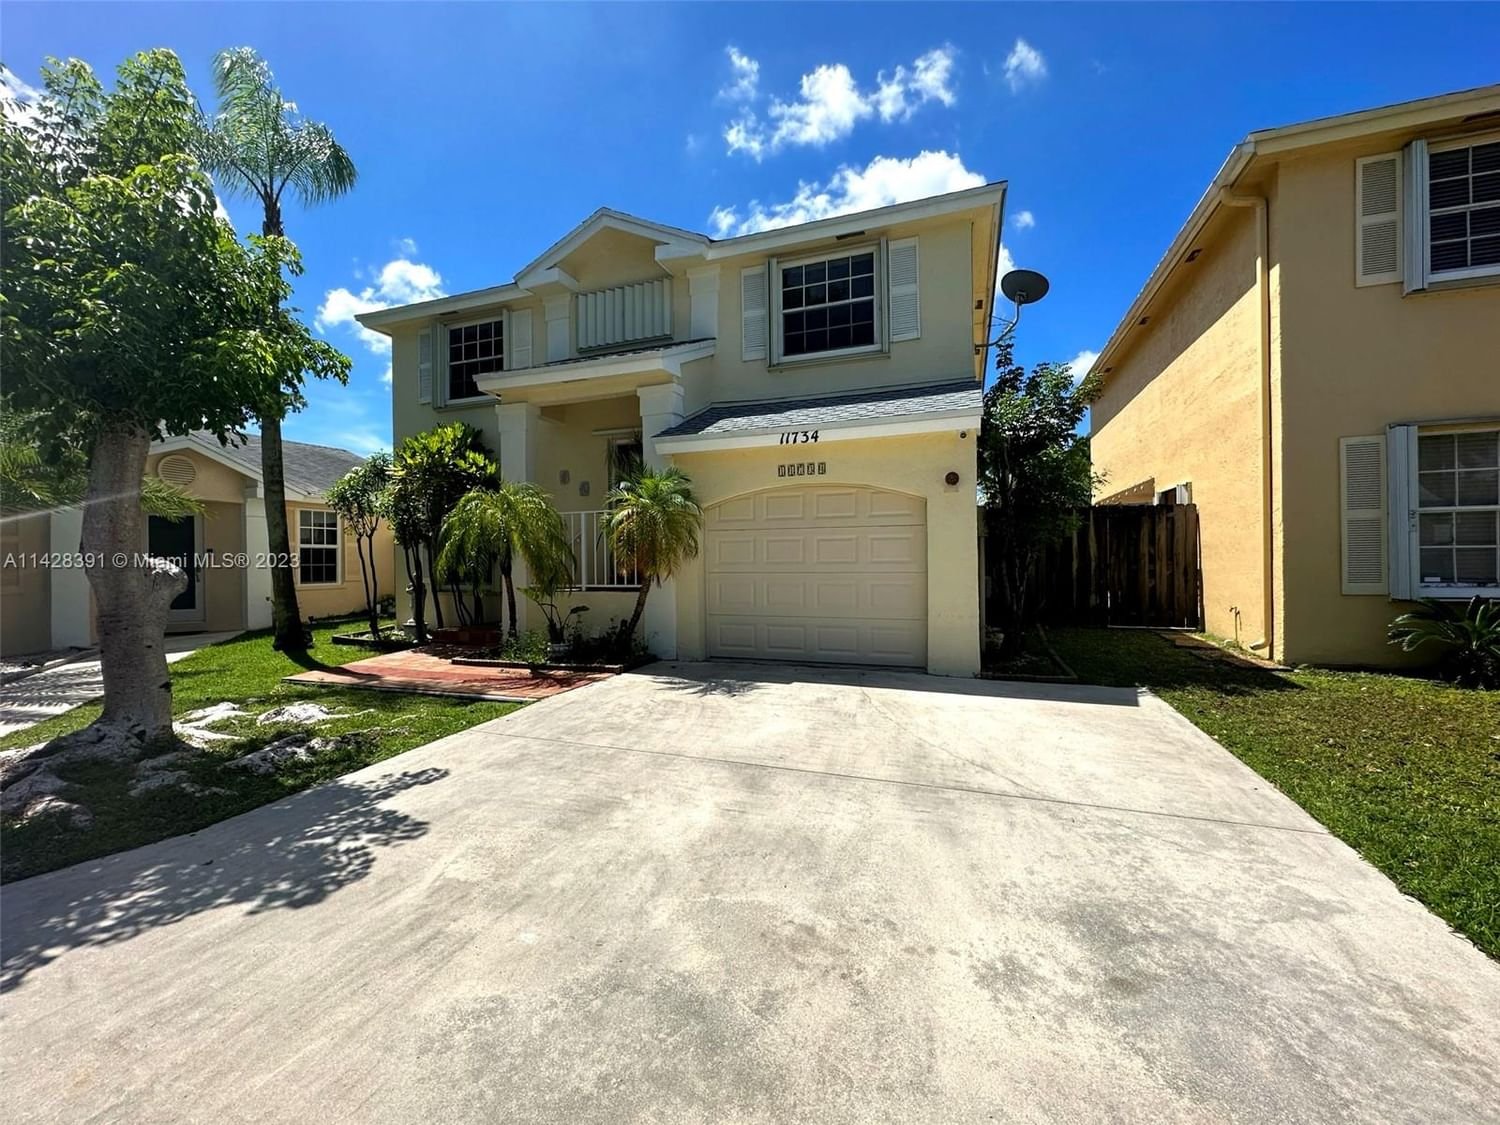 Real estate property located at 11734 99th Ln, Miami-Dade County, Miami, FL